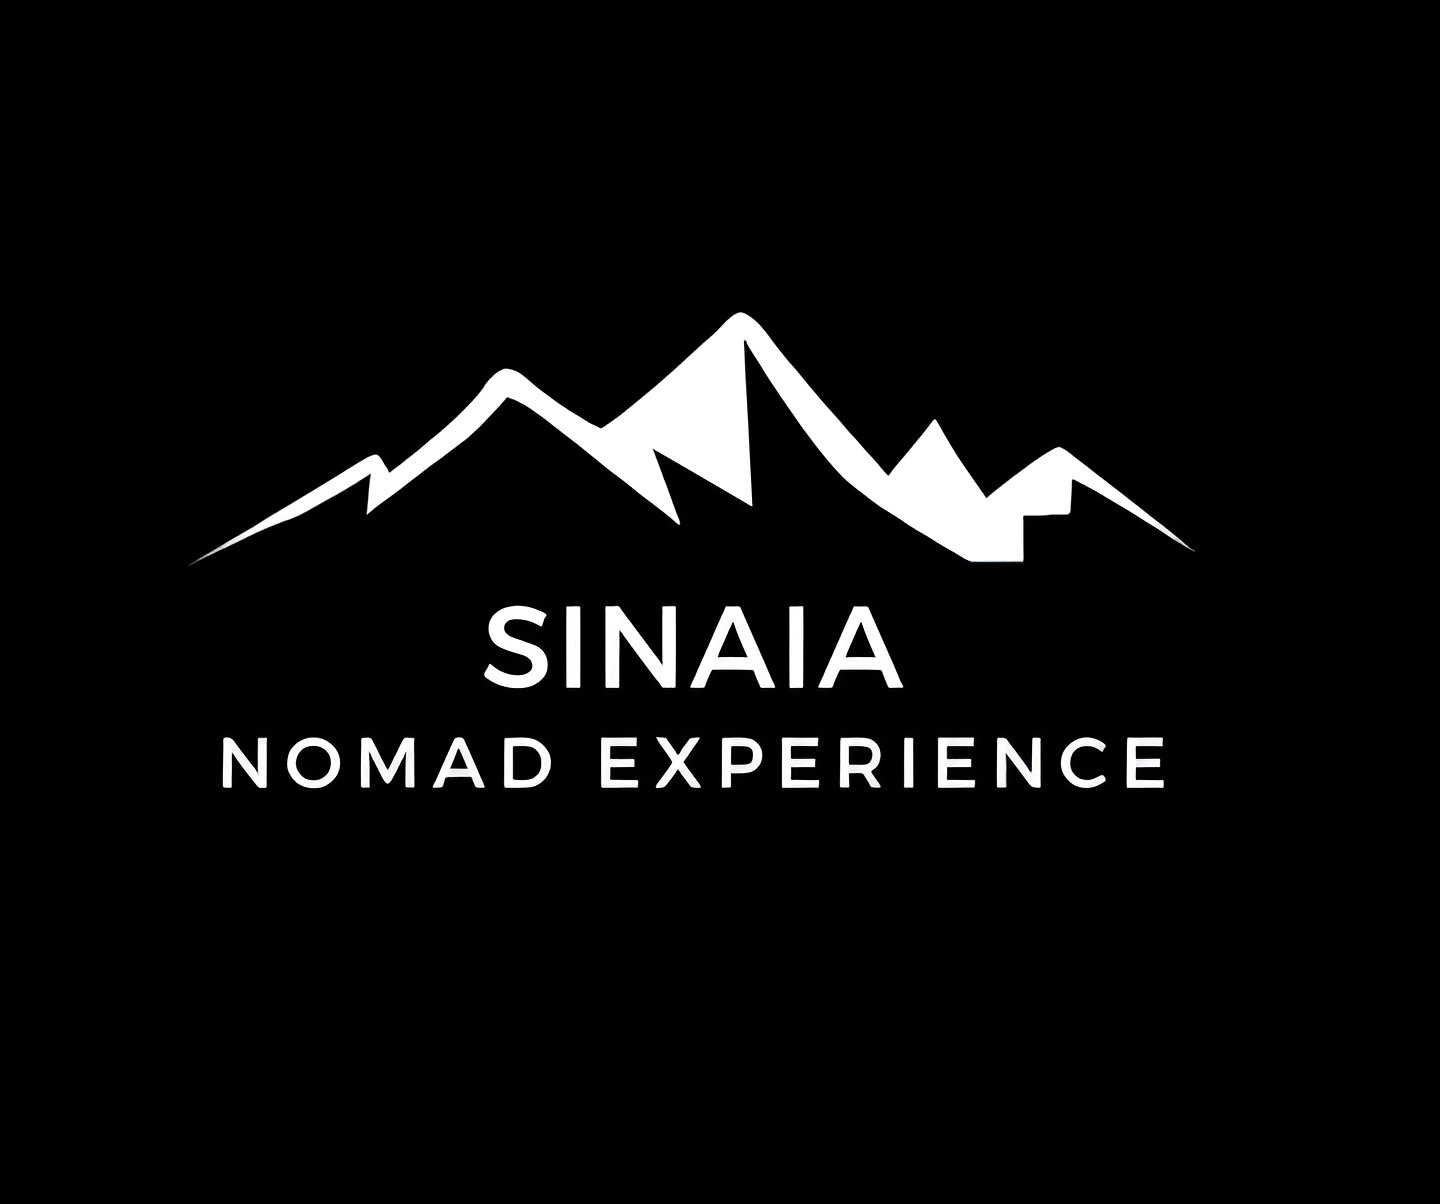 Sinaia Nomad Experience